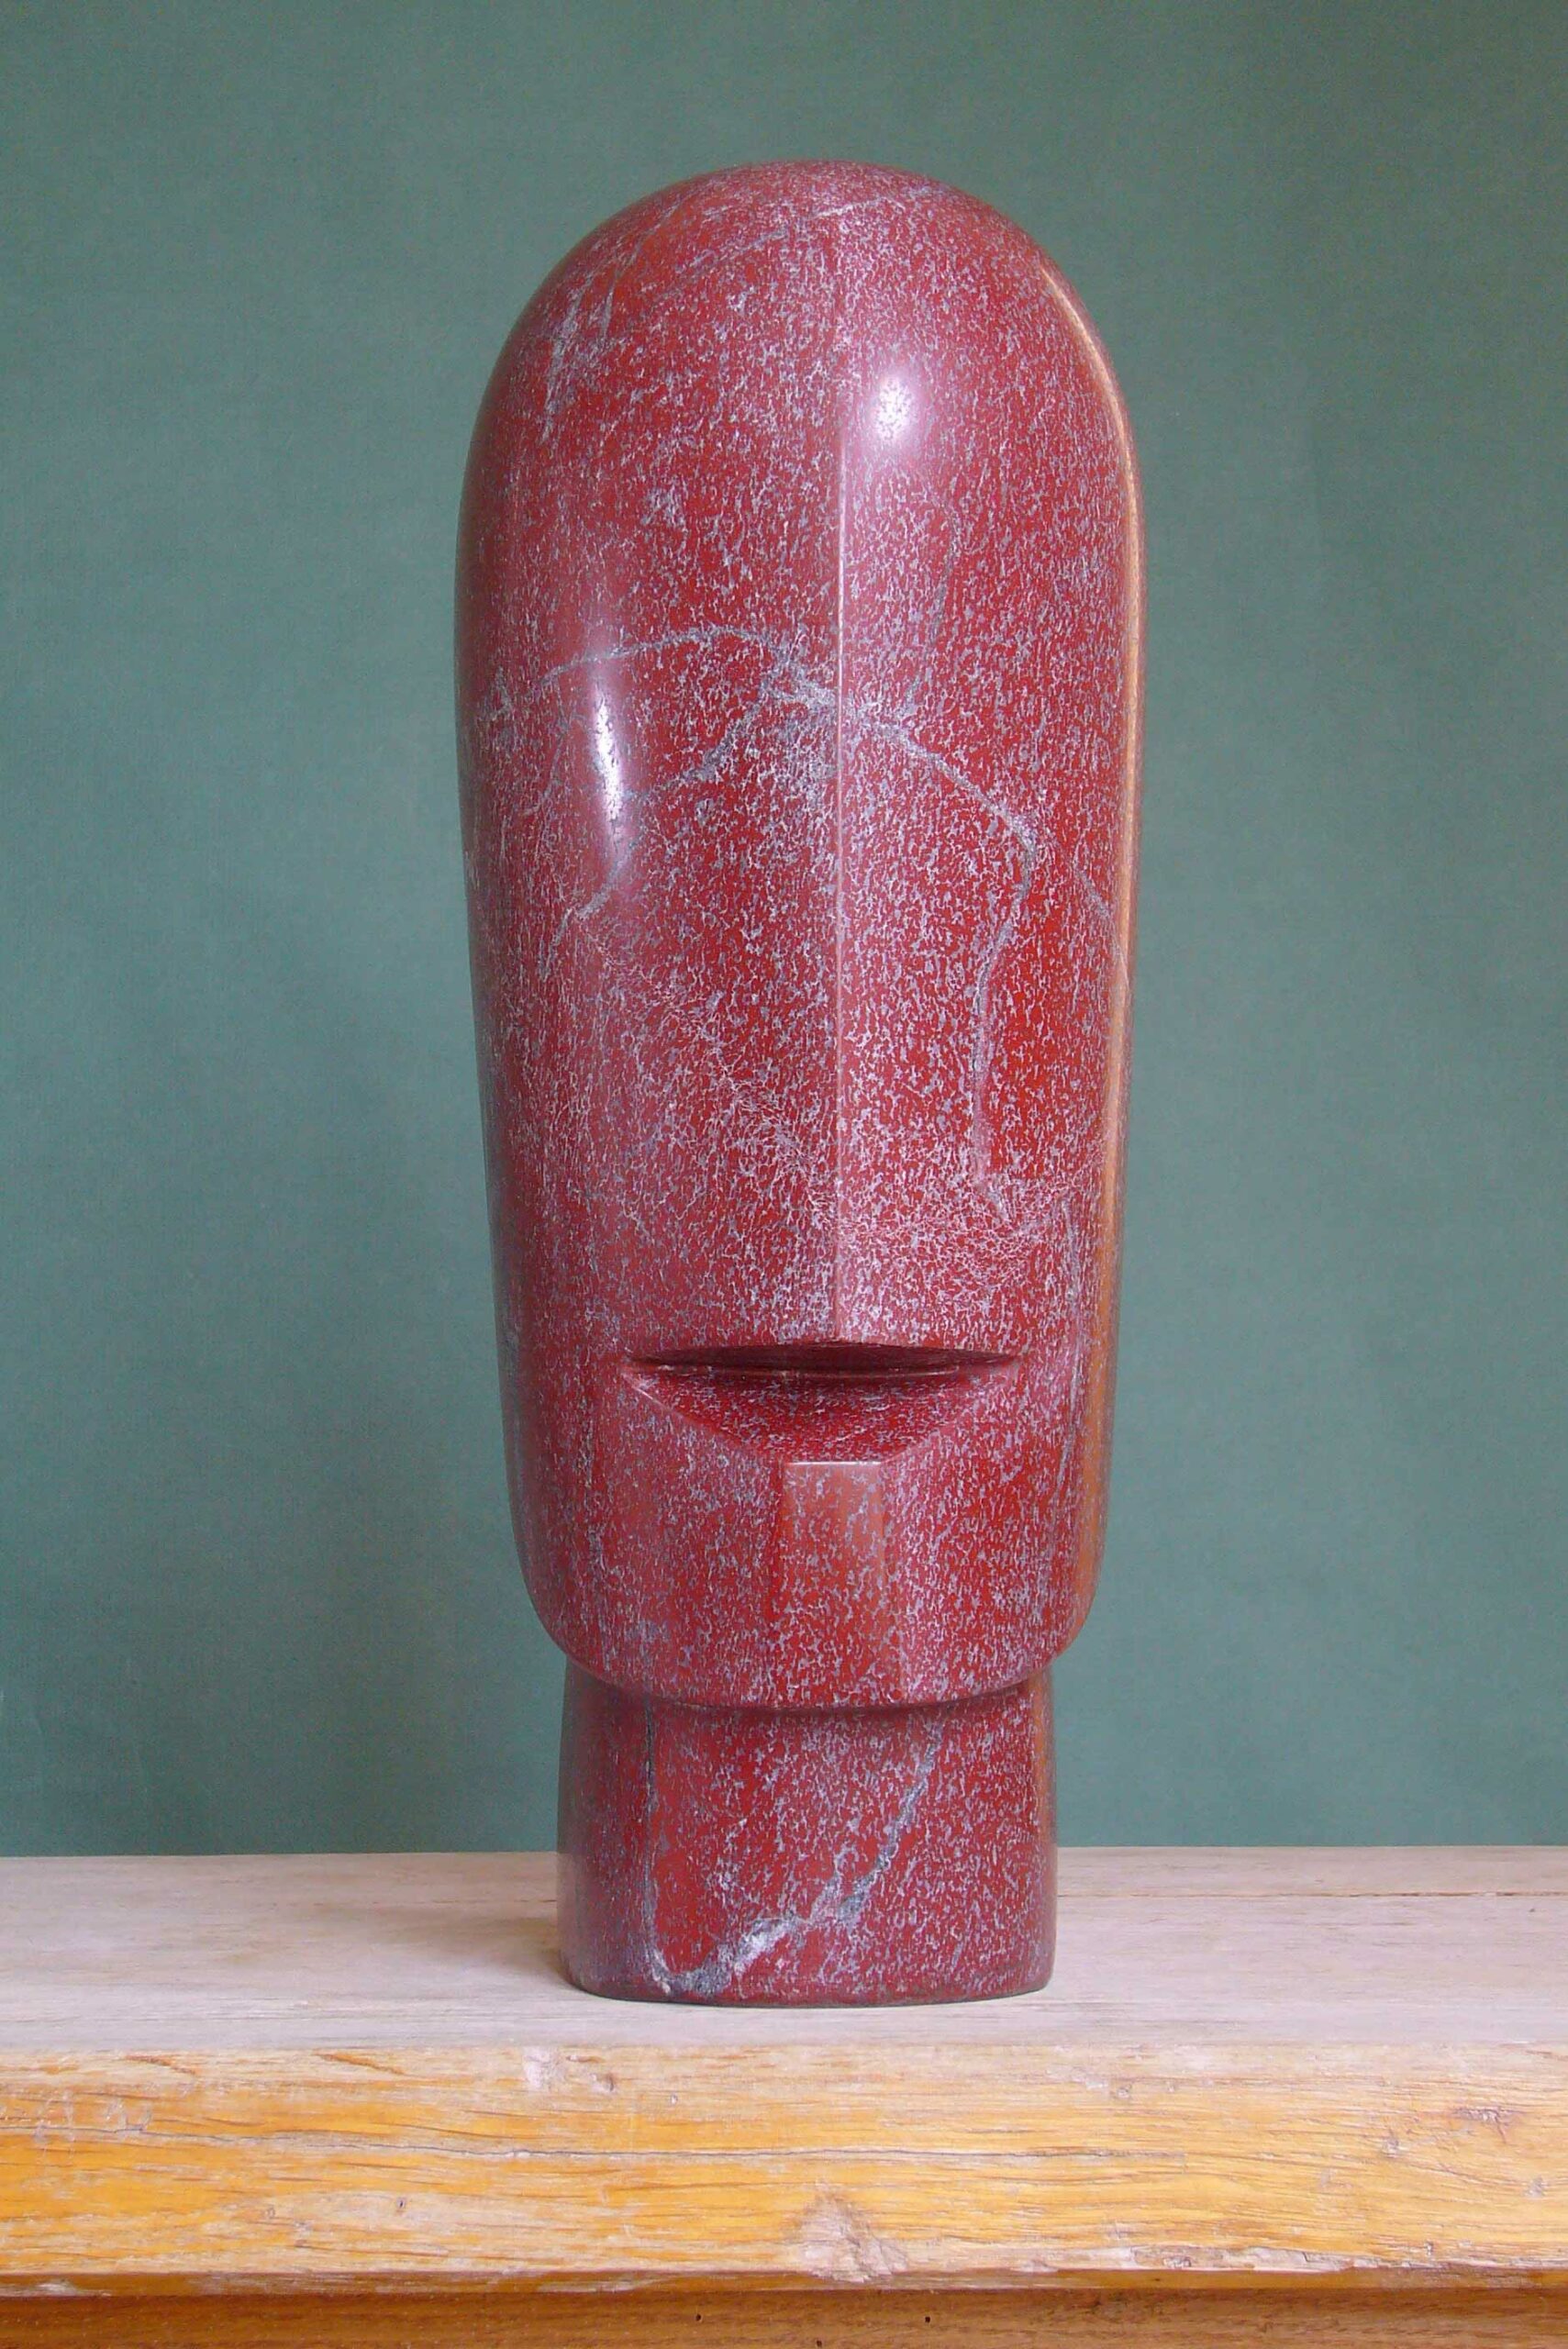 5. Ezechiel, 2006, marbre Rosso Laguna, h 38 cm ‘Je mettrai en vous mon esprit’ Ez 36,27